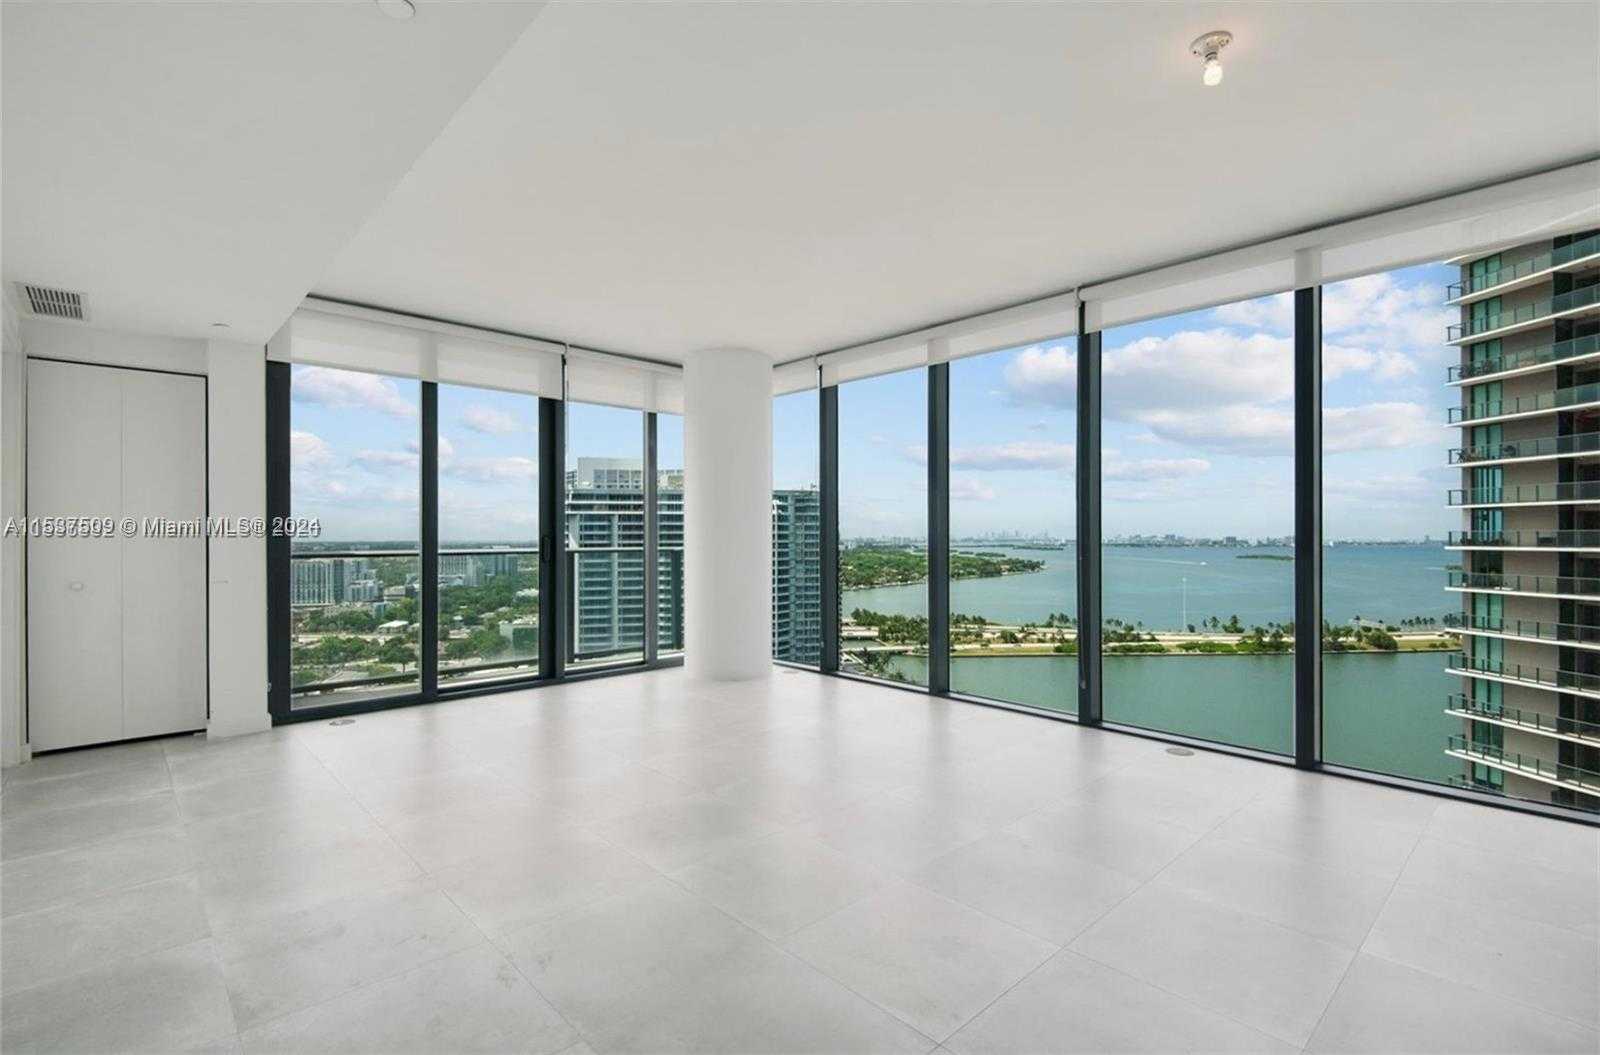 Apartment Miami  -  ref MIA392244569 (picture 1)